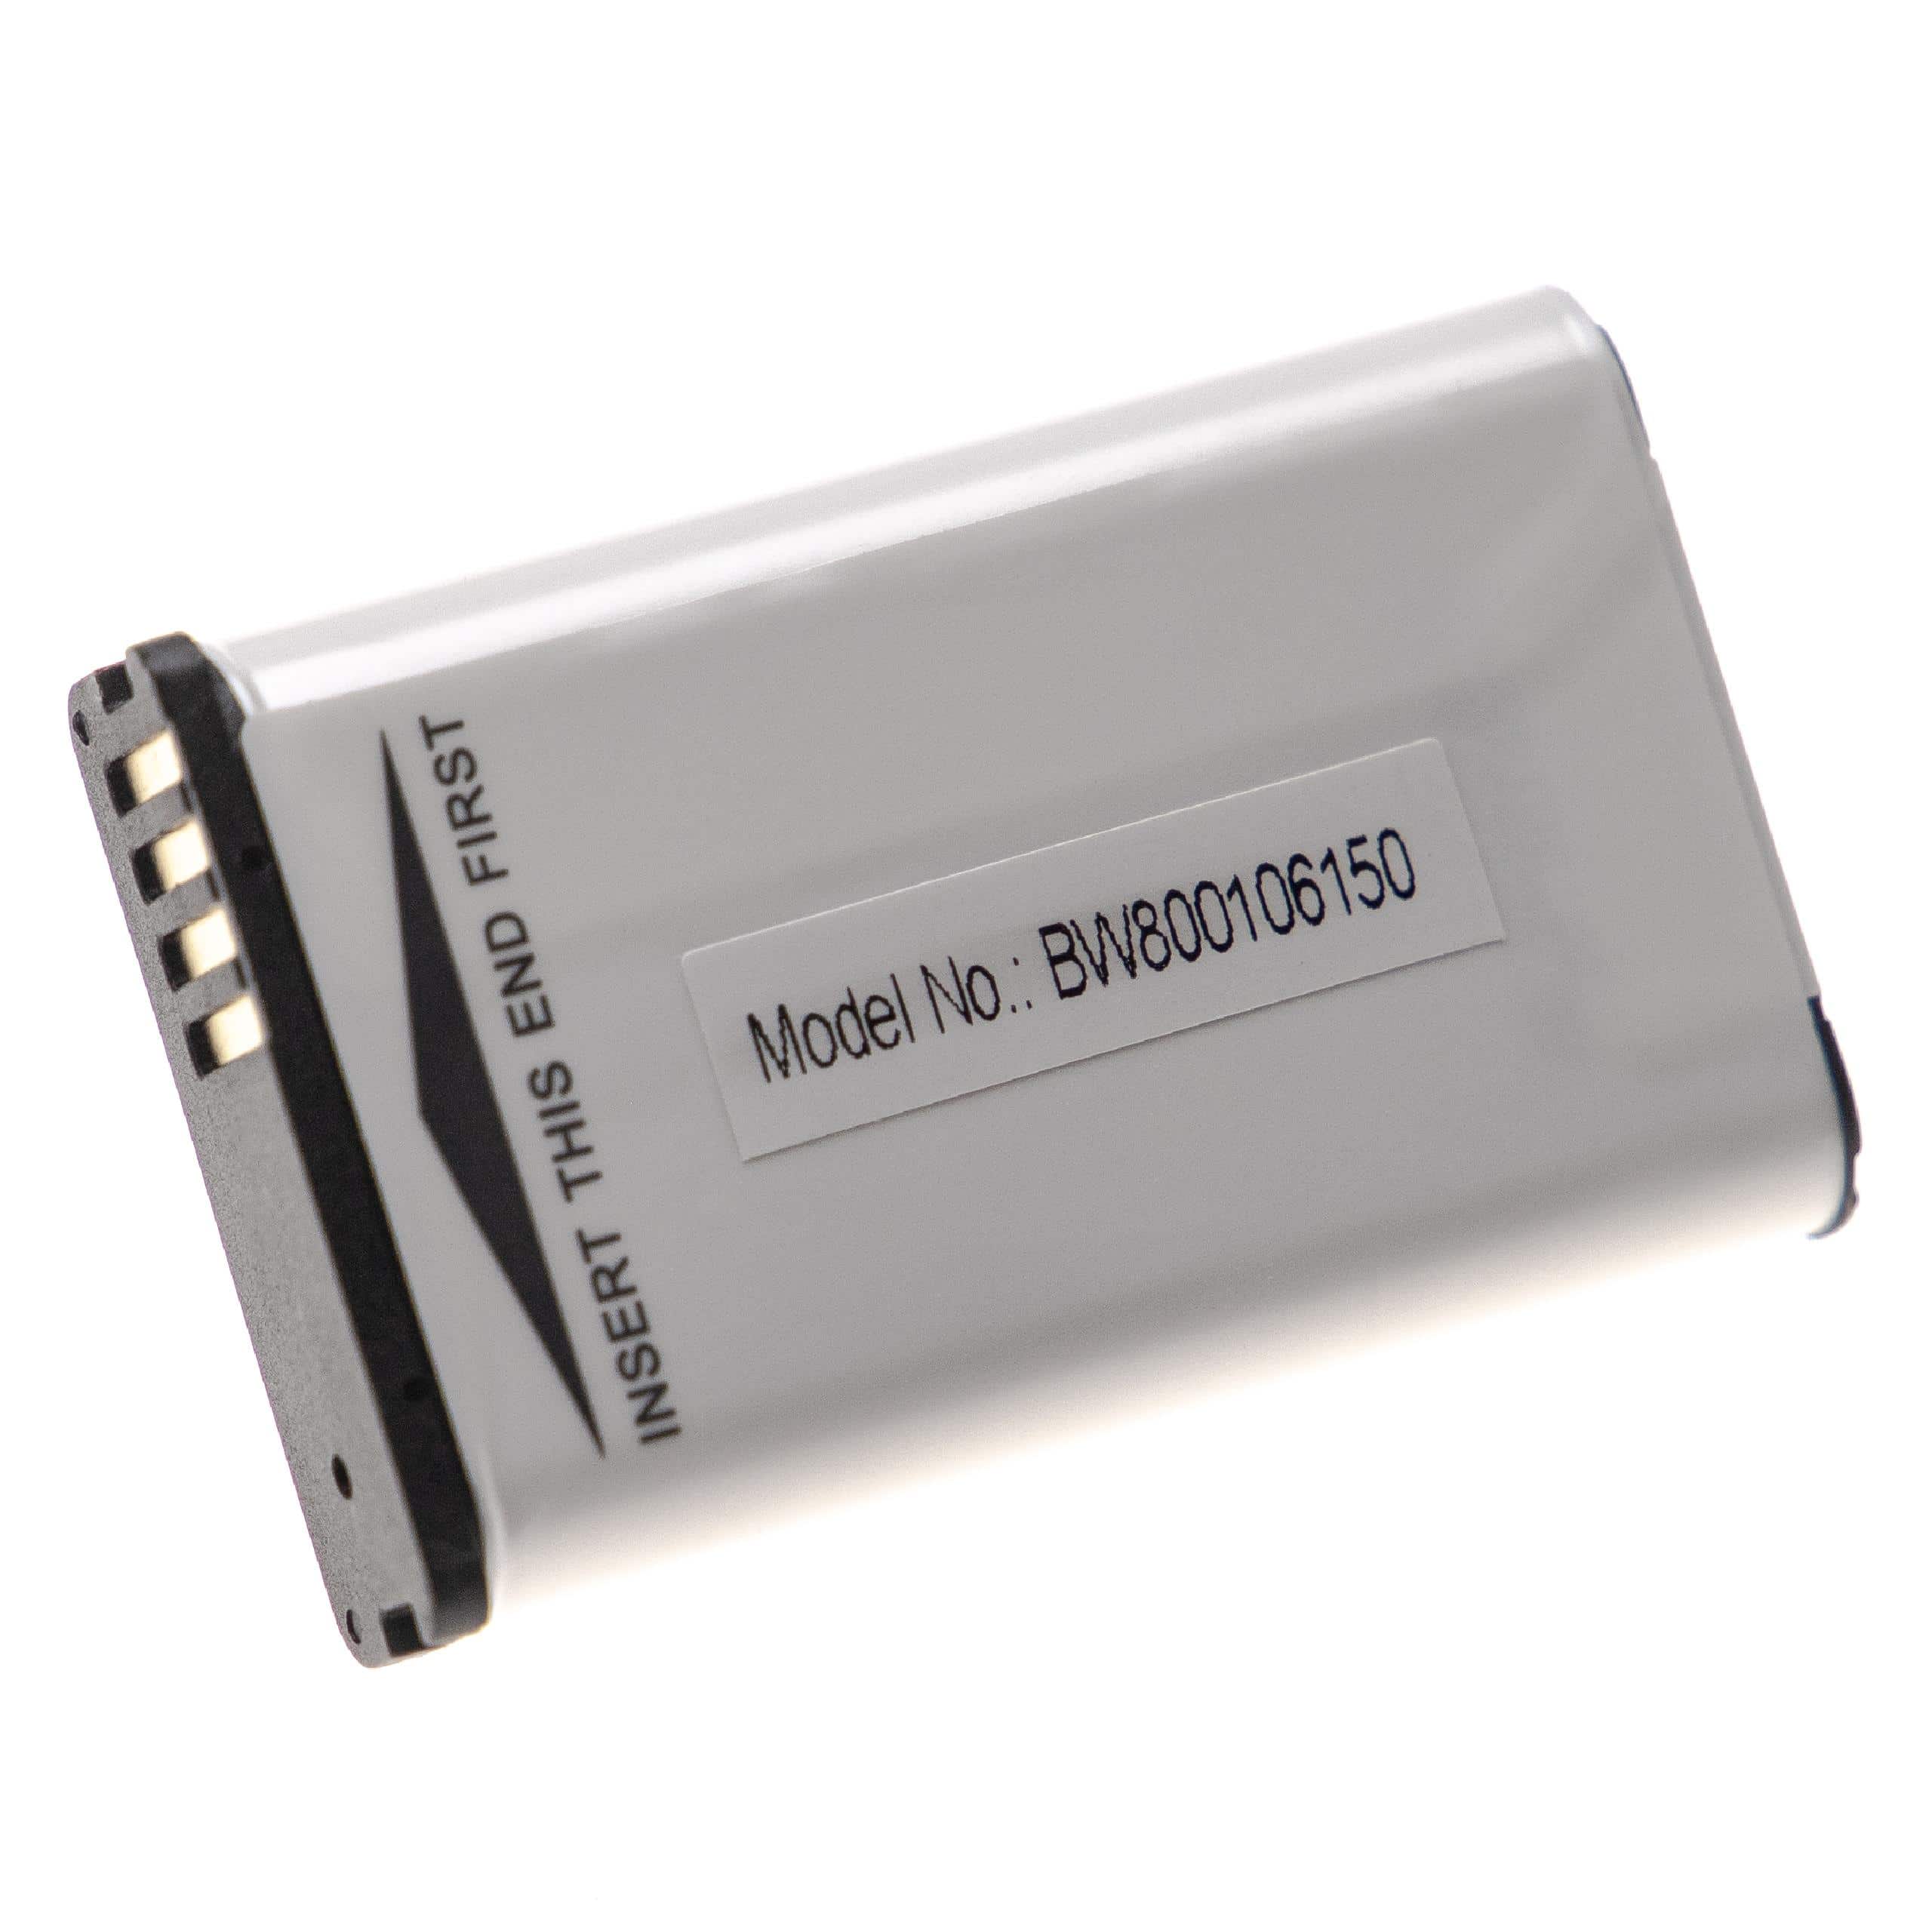 Batterie remplace Garmin 361-00053-00, 010-11599-00, 010-11654-03 pour navigation GPS - 1800mAh 3,7V Li-ion